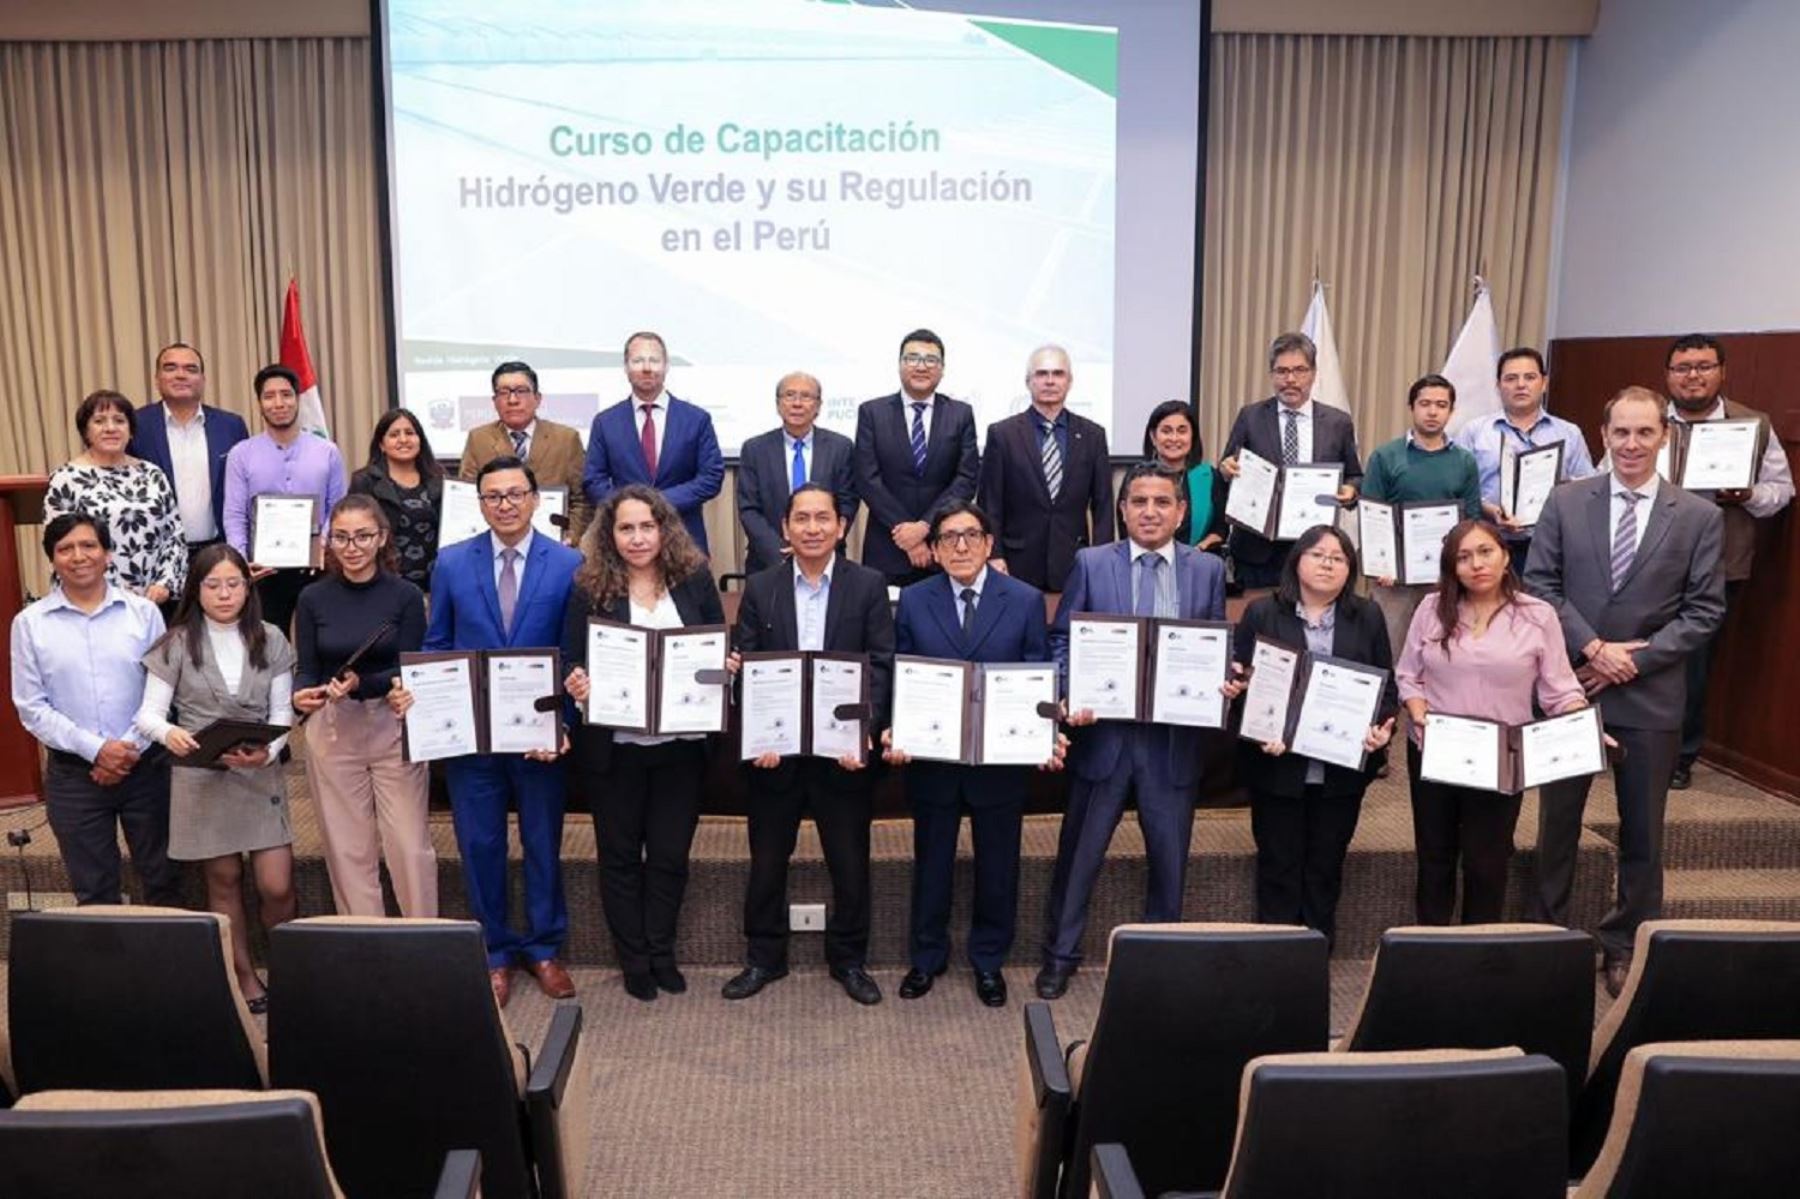 El Ministerio de Energía y Minas (Minem) desarrolló el curso de capacitación en Hidrógeno Verde y su regulación en el Perú, con el apoyo de la cooperación alemana para el desarrollo (GIZ). Foto: Cortesía.